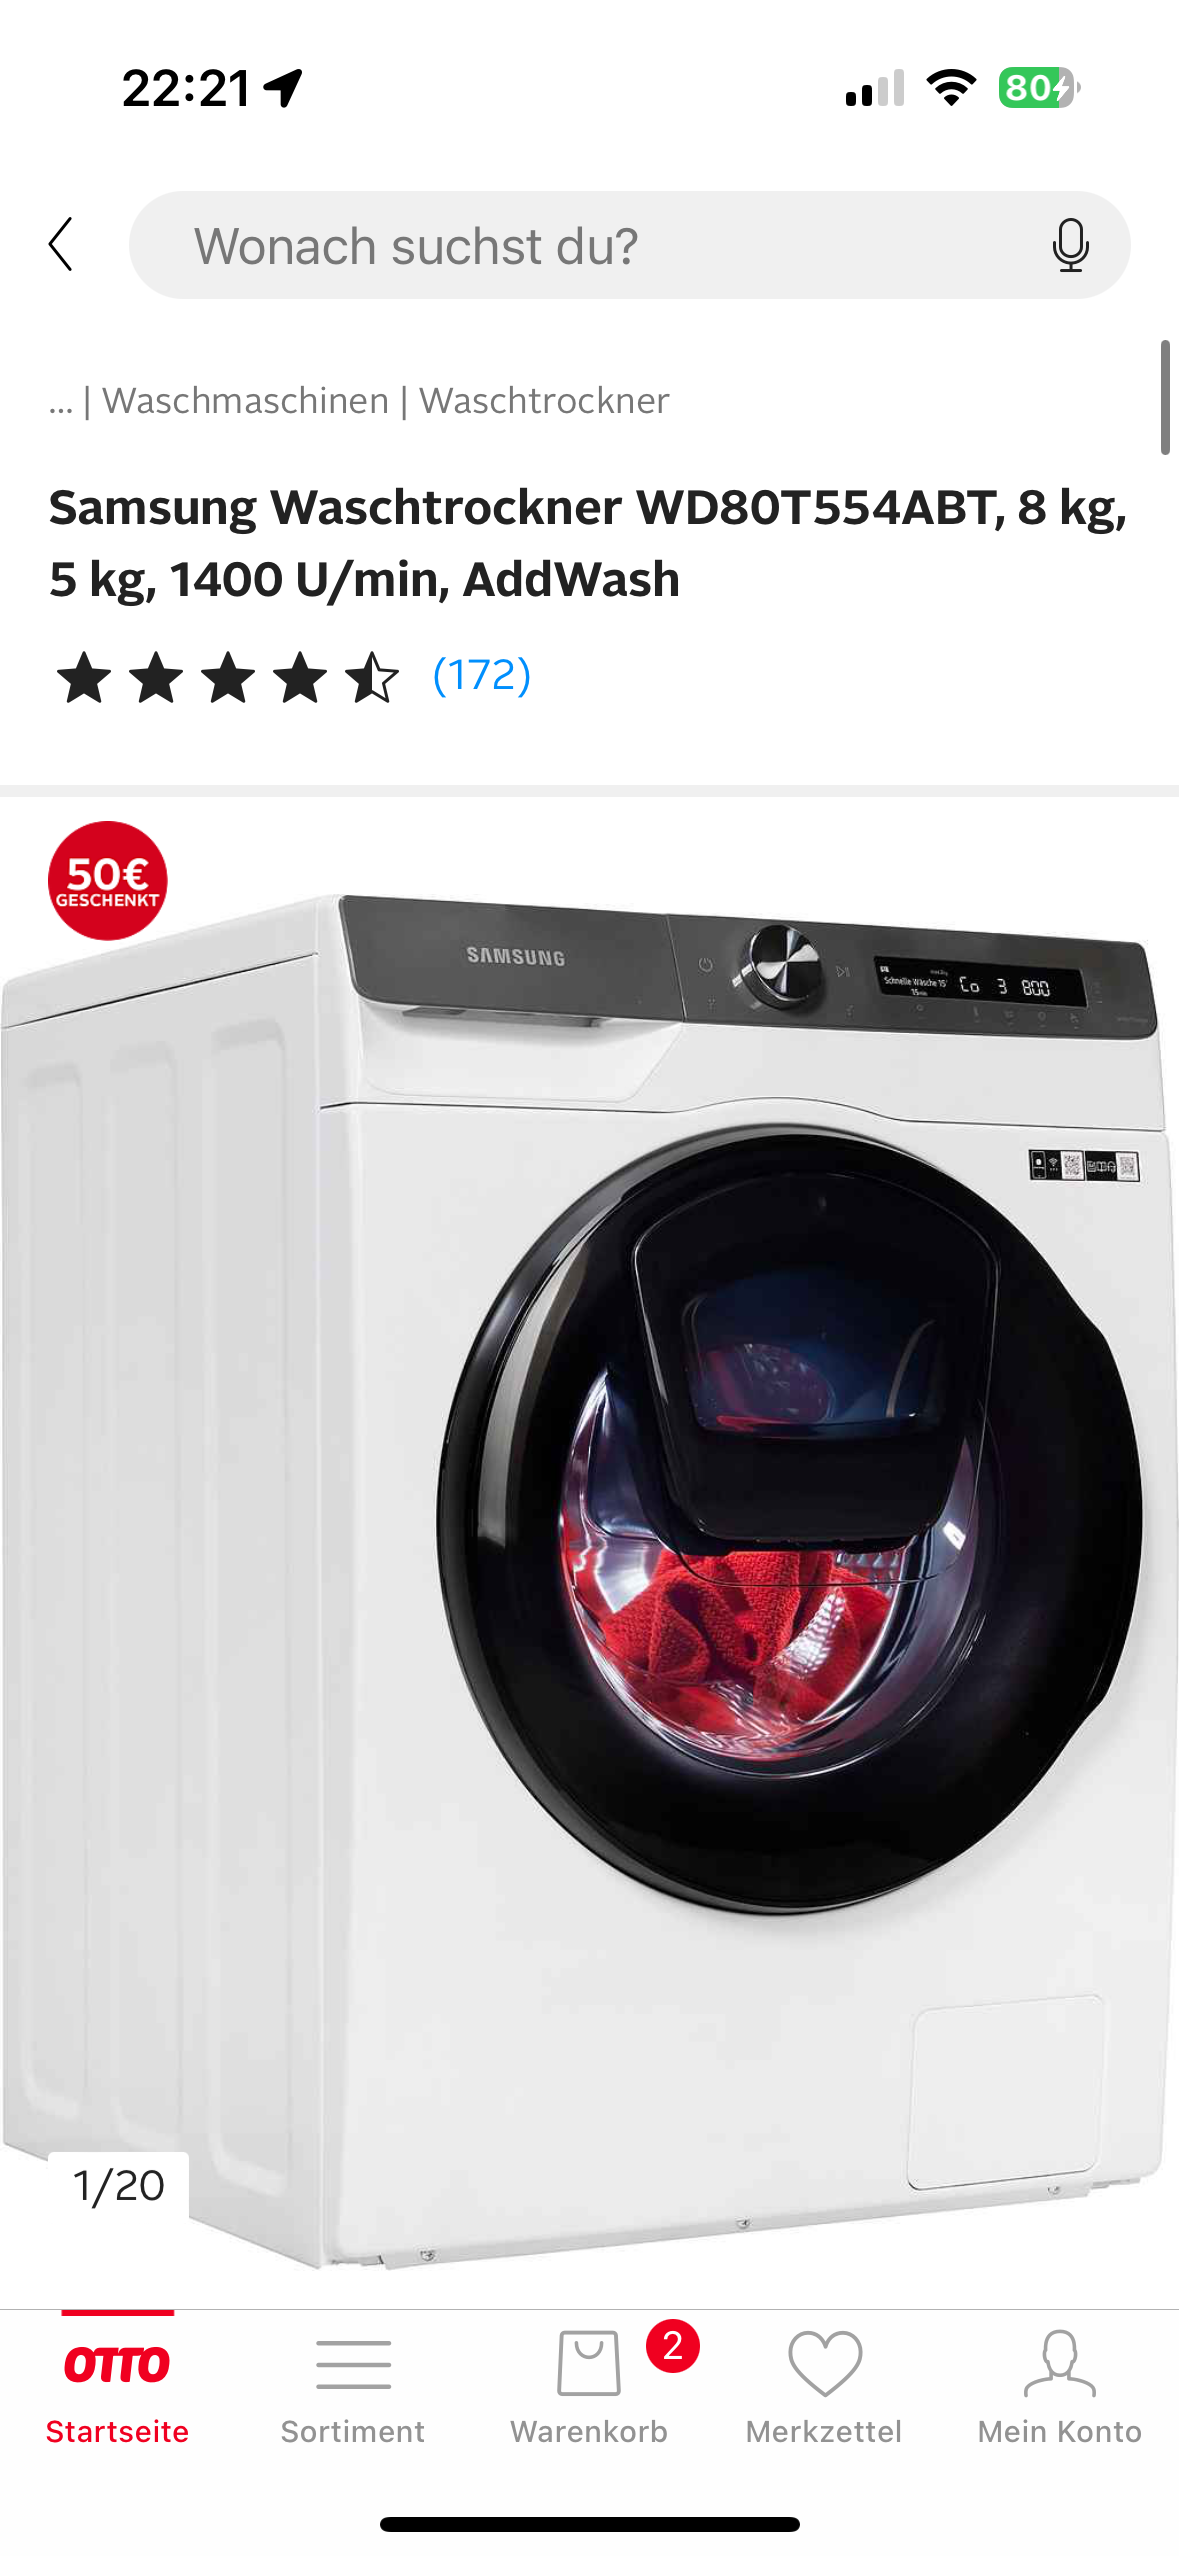 Würdet ihr waschtrockner (Waschmaschine, Trockner) diesen Haushaltsgeräte, kaufen